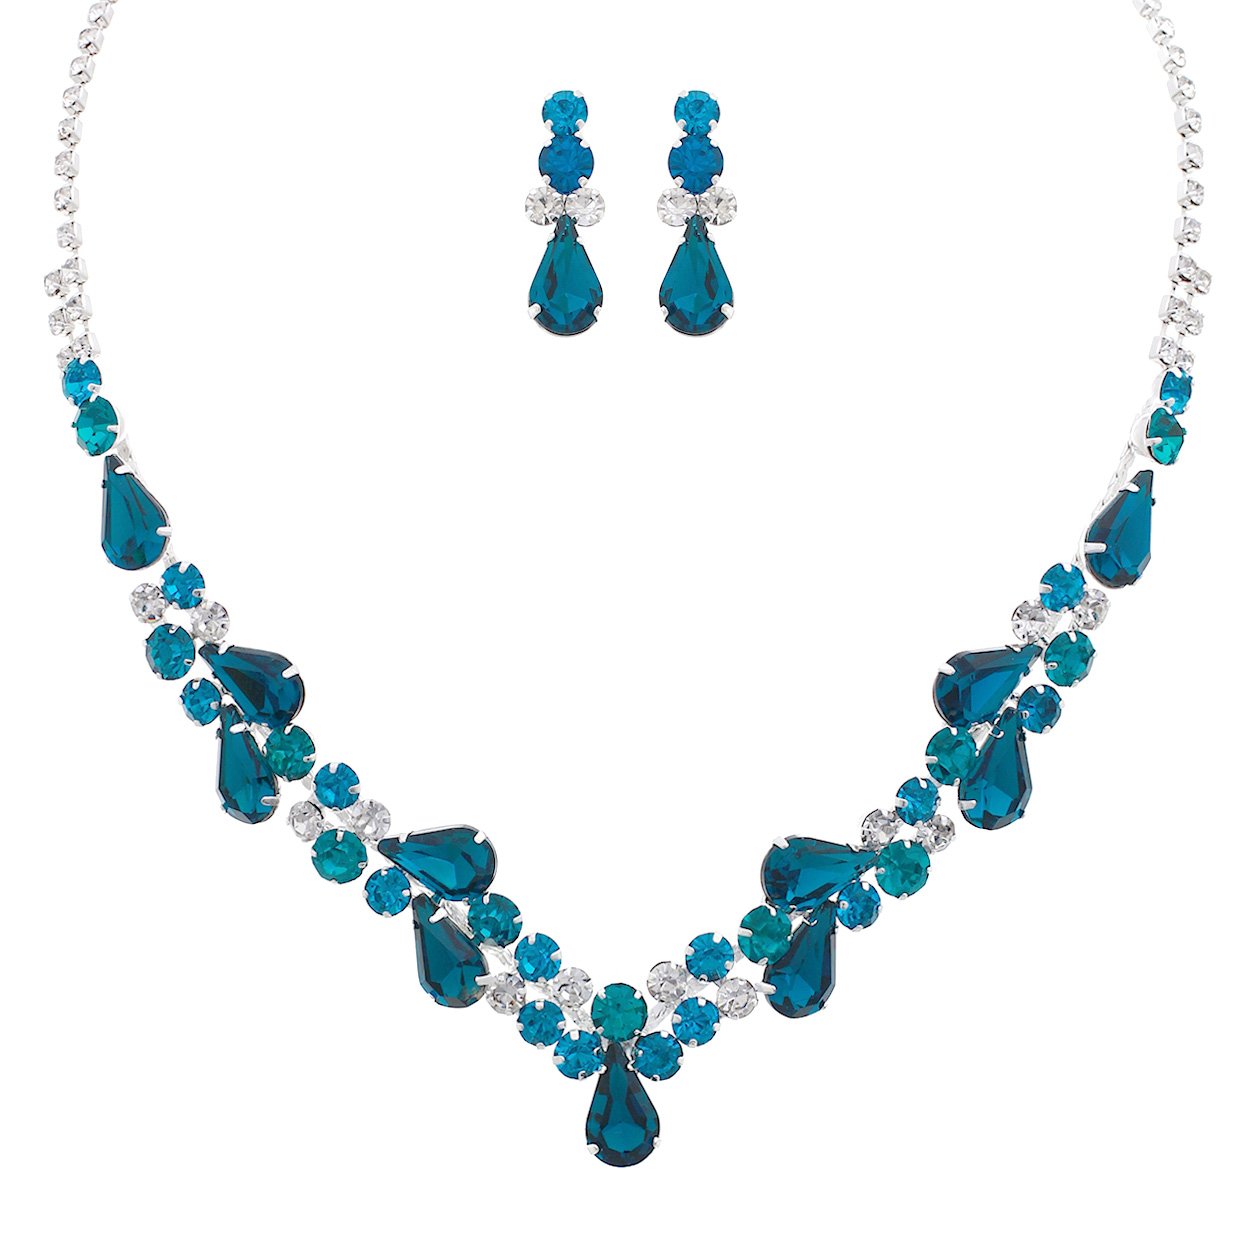 Women's Rhinestone Teardrop Statement Necklace Hypoallergenic Drop Earrings Set, 15"-21" with 6" Extender (Blue Zircon)